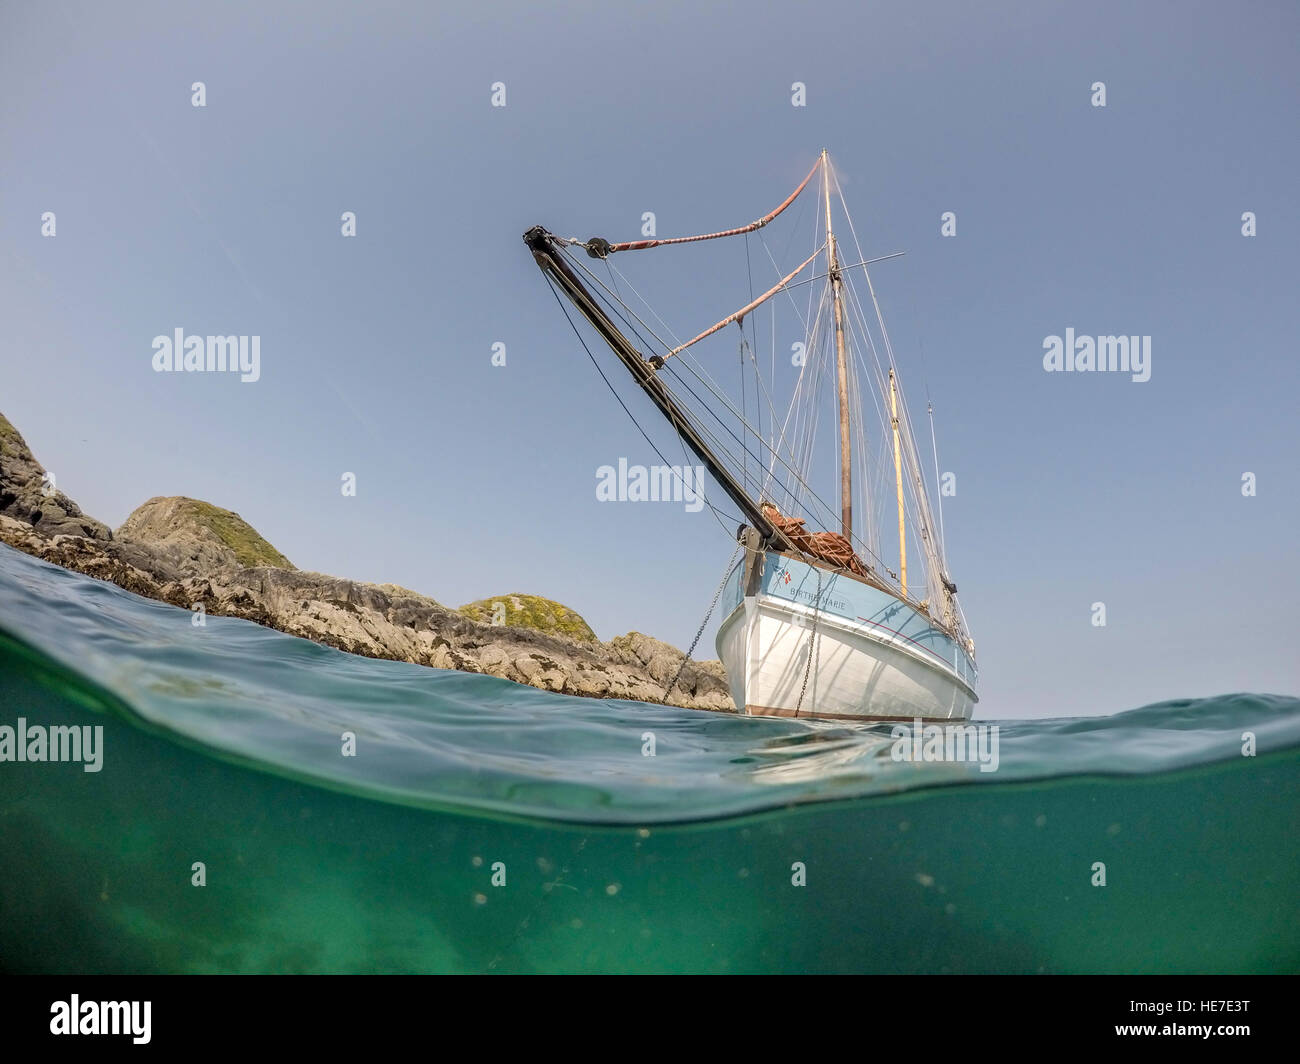 Vue sous-marine de pêche à voile traditionnel bateau ancré par l'île de SOA, l'île d'Iona, Argyll, Scoland, UK Banque D'Images